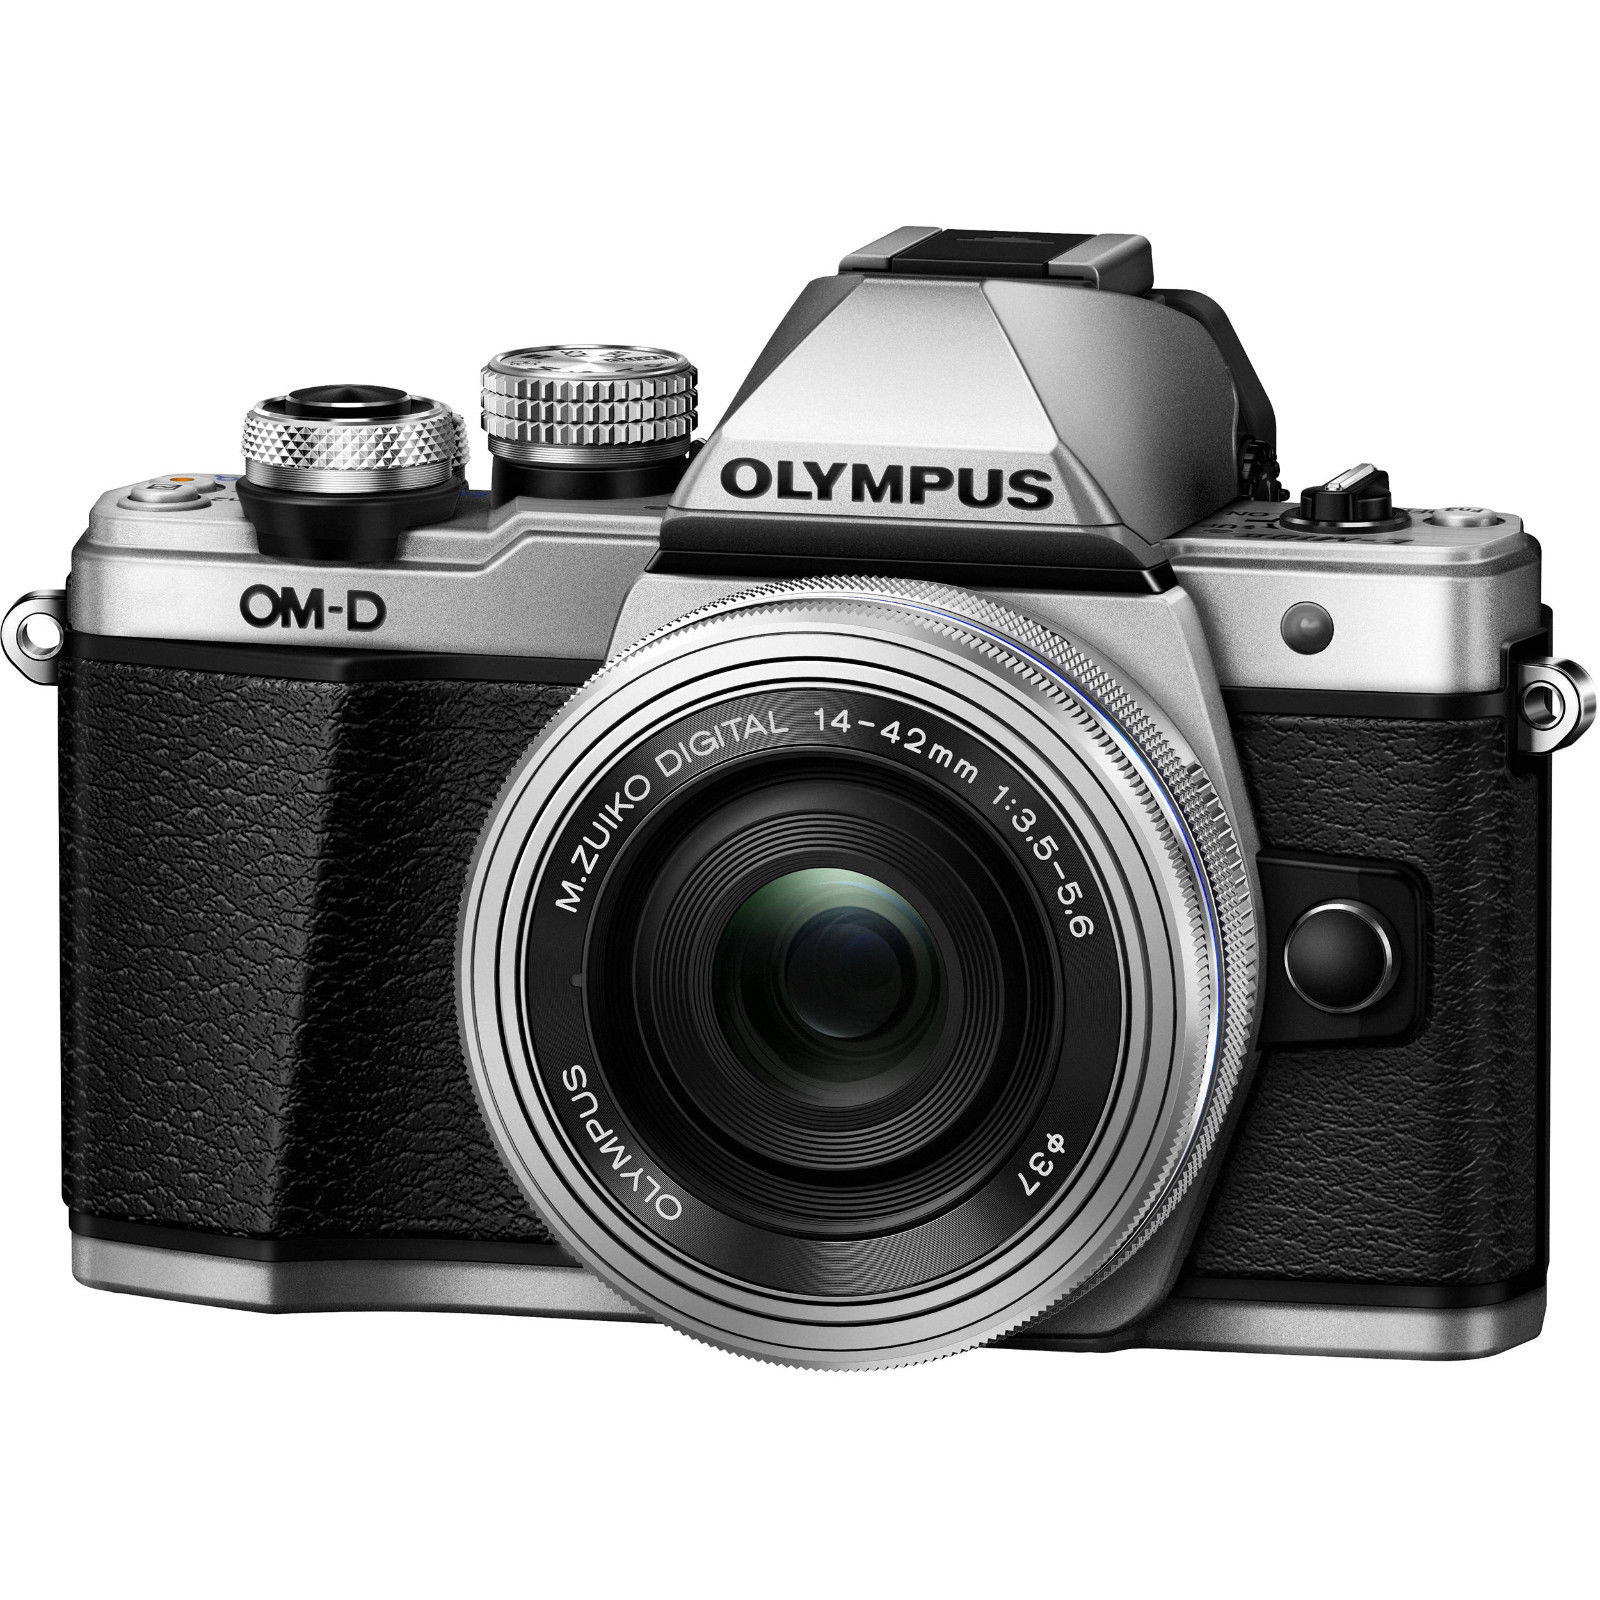 Olympus OM-D E-M10 Mark II Kamera + M. Zuiko 14 - 42 mm Objektiv, wie neu!